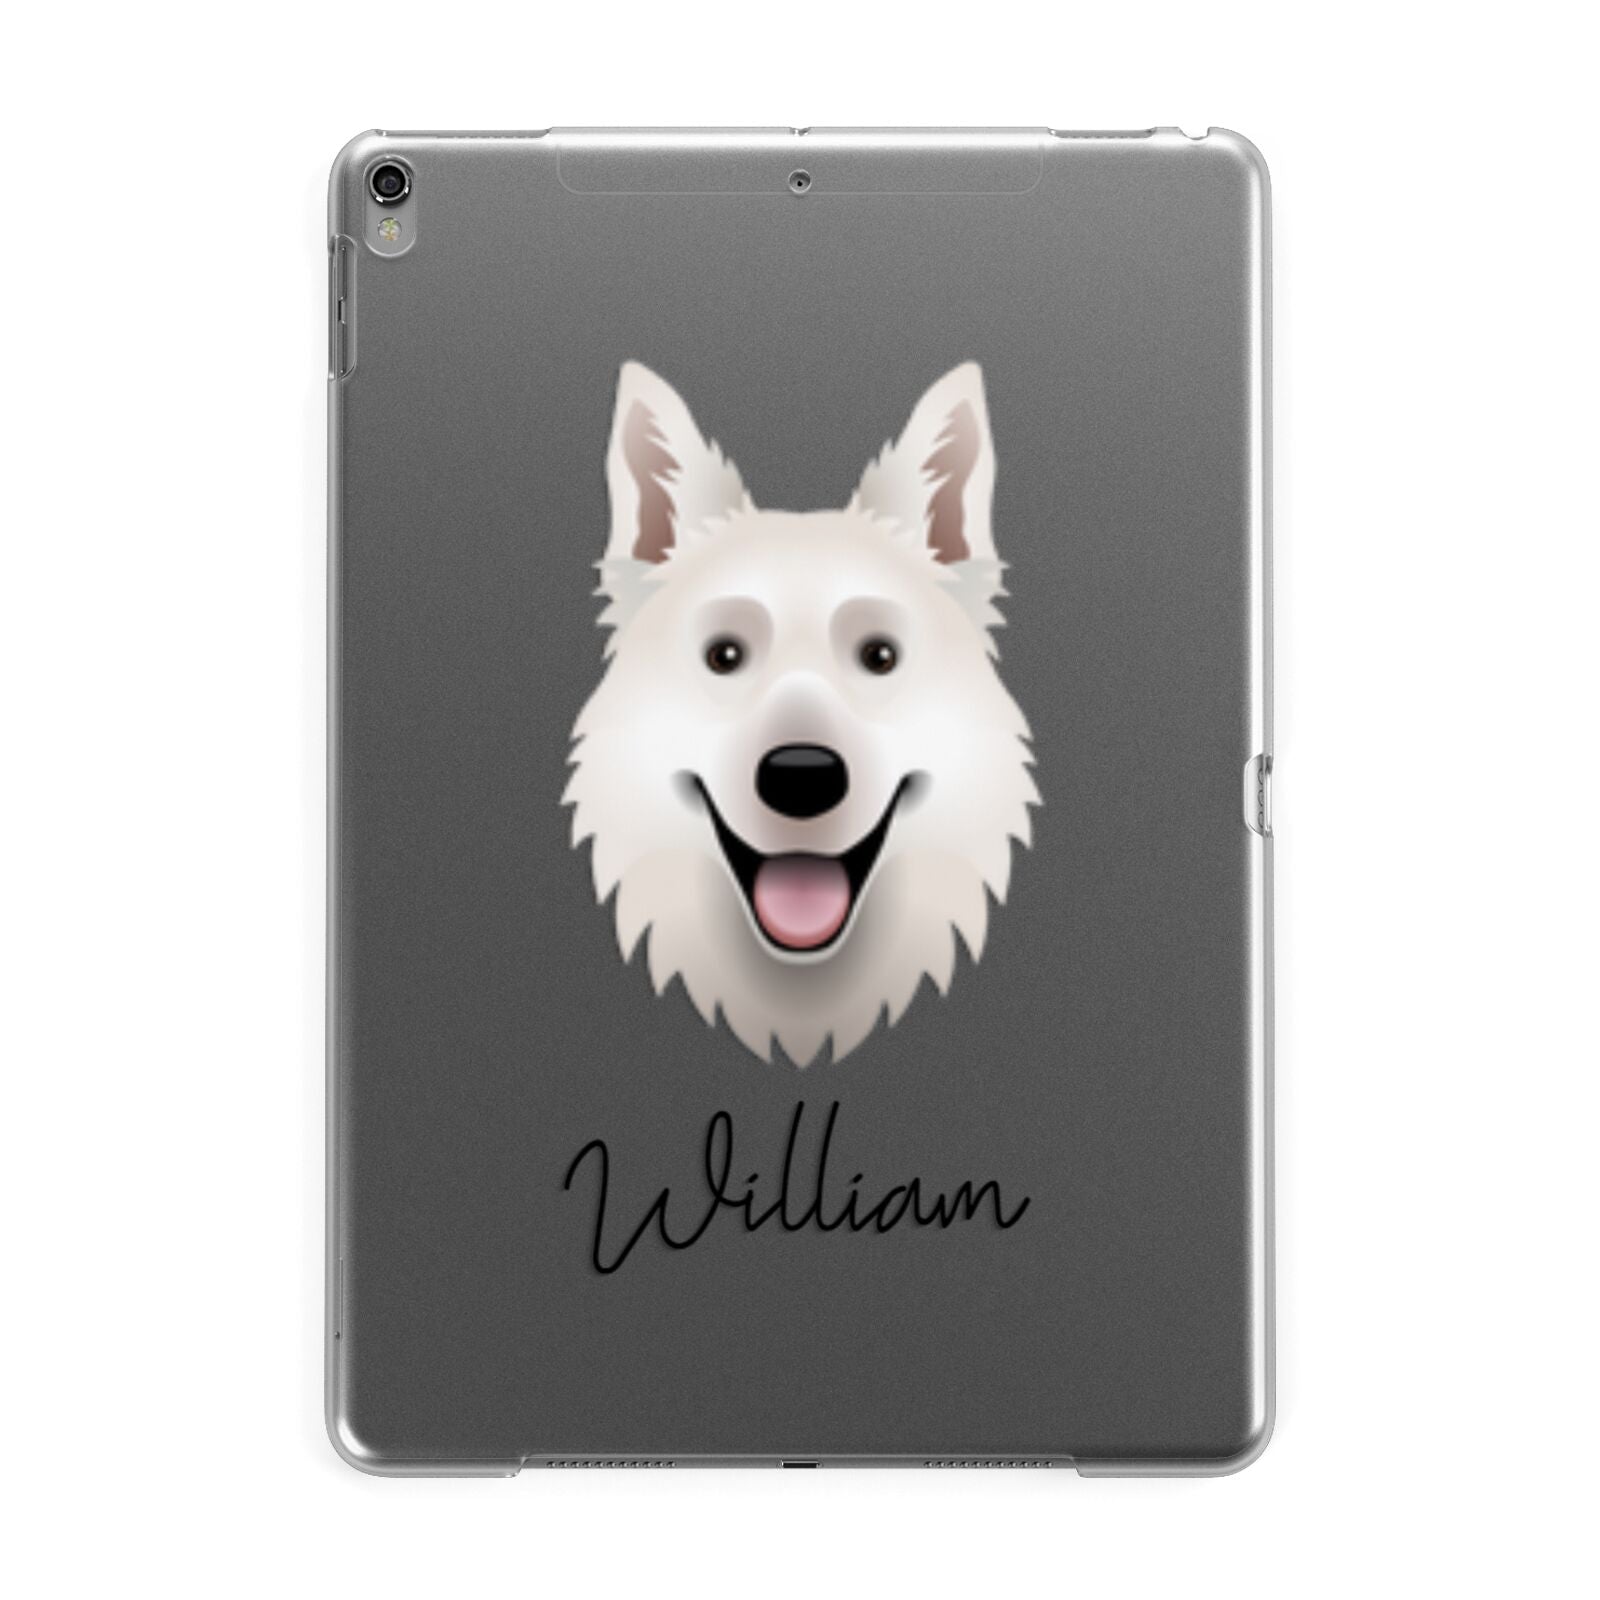 White Swiss Shepherd Dog Personalised Apple iPad Grey Case